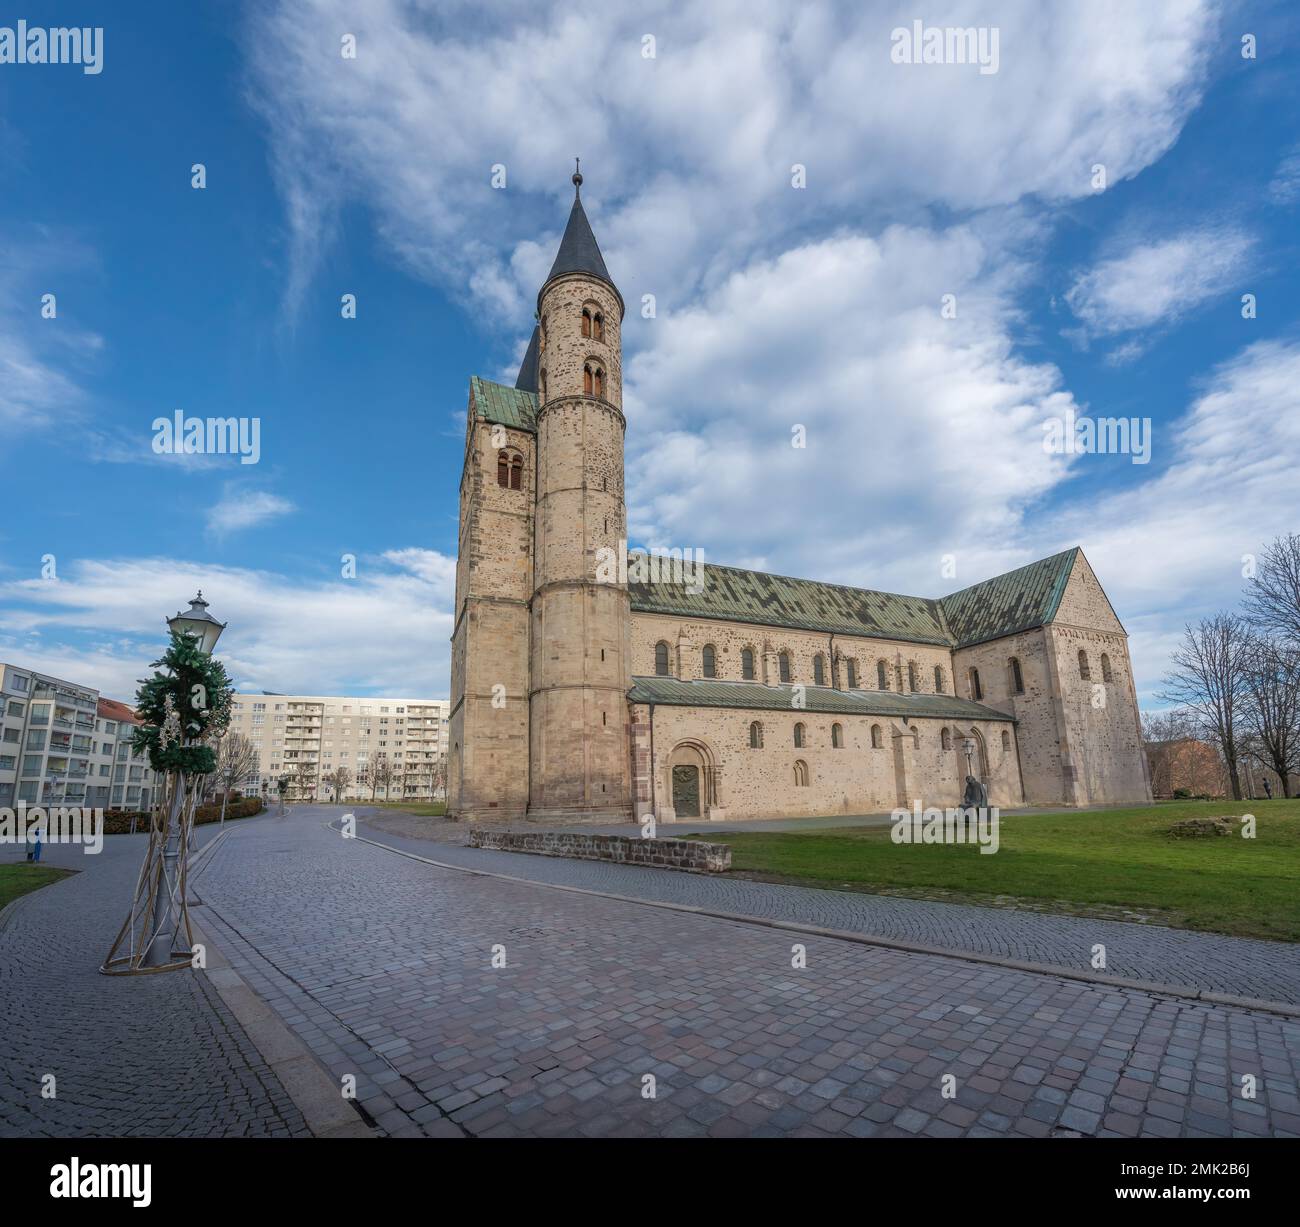 Chiesa del monastero (Kloster Unser Lieben Frauen) - Magdeburgo, Sassonia-Anhalt, Germania Foto Stock